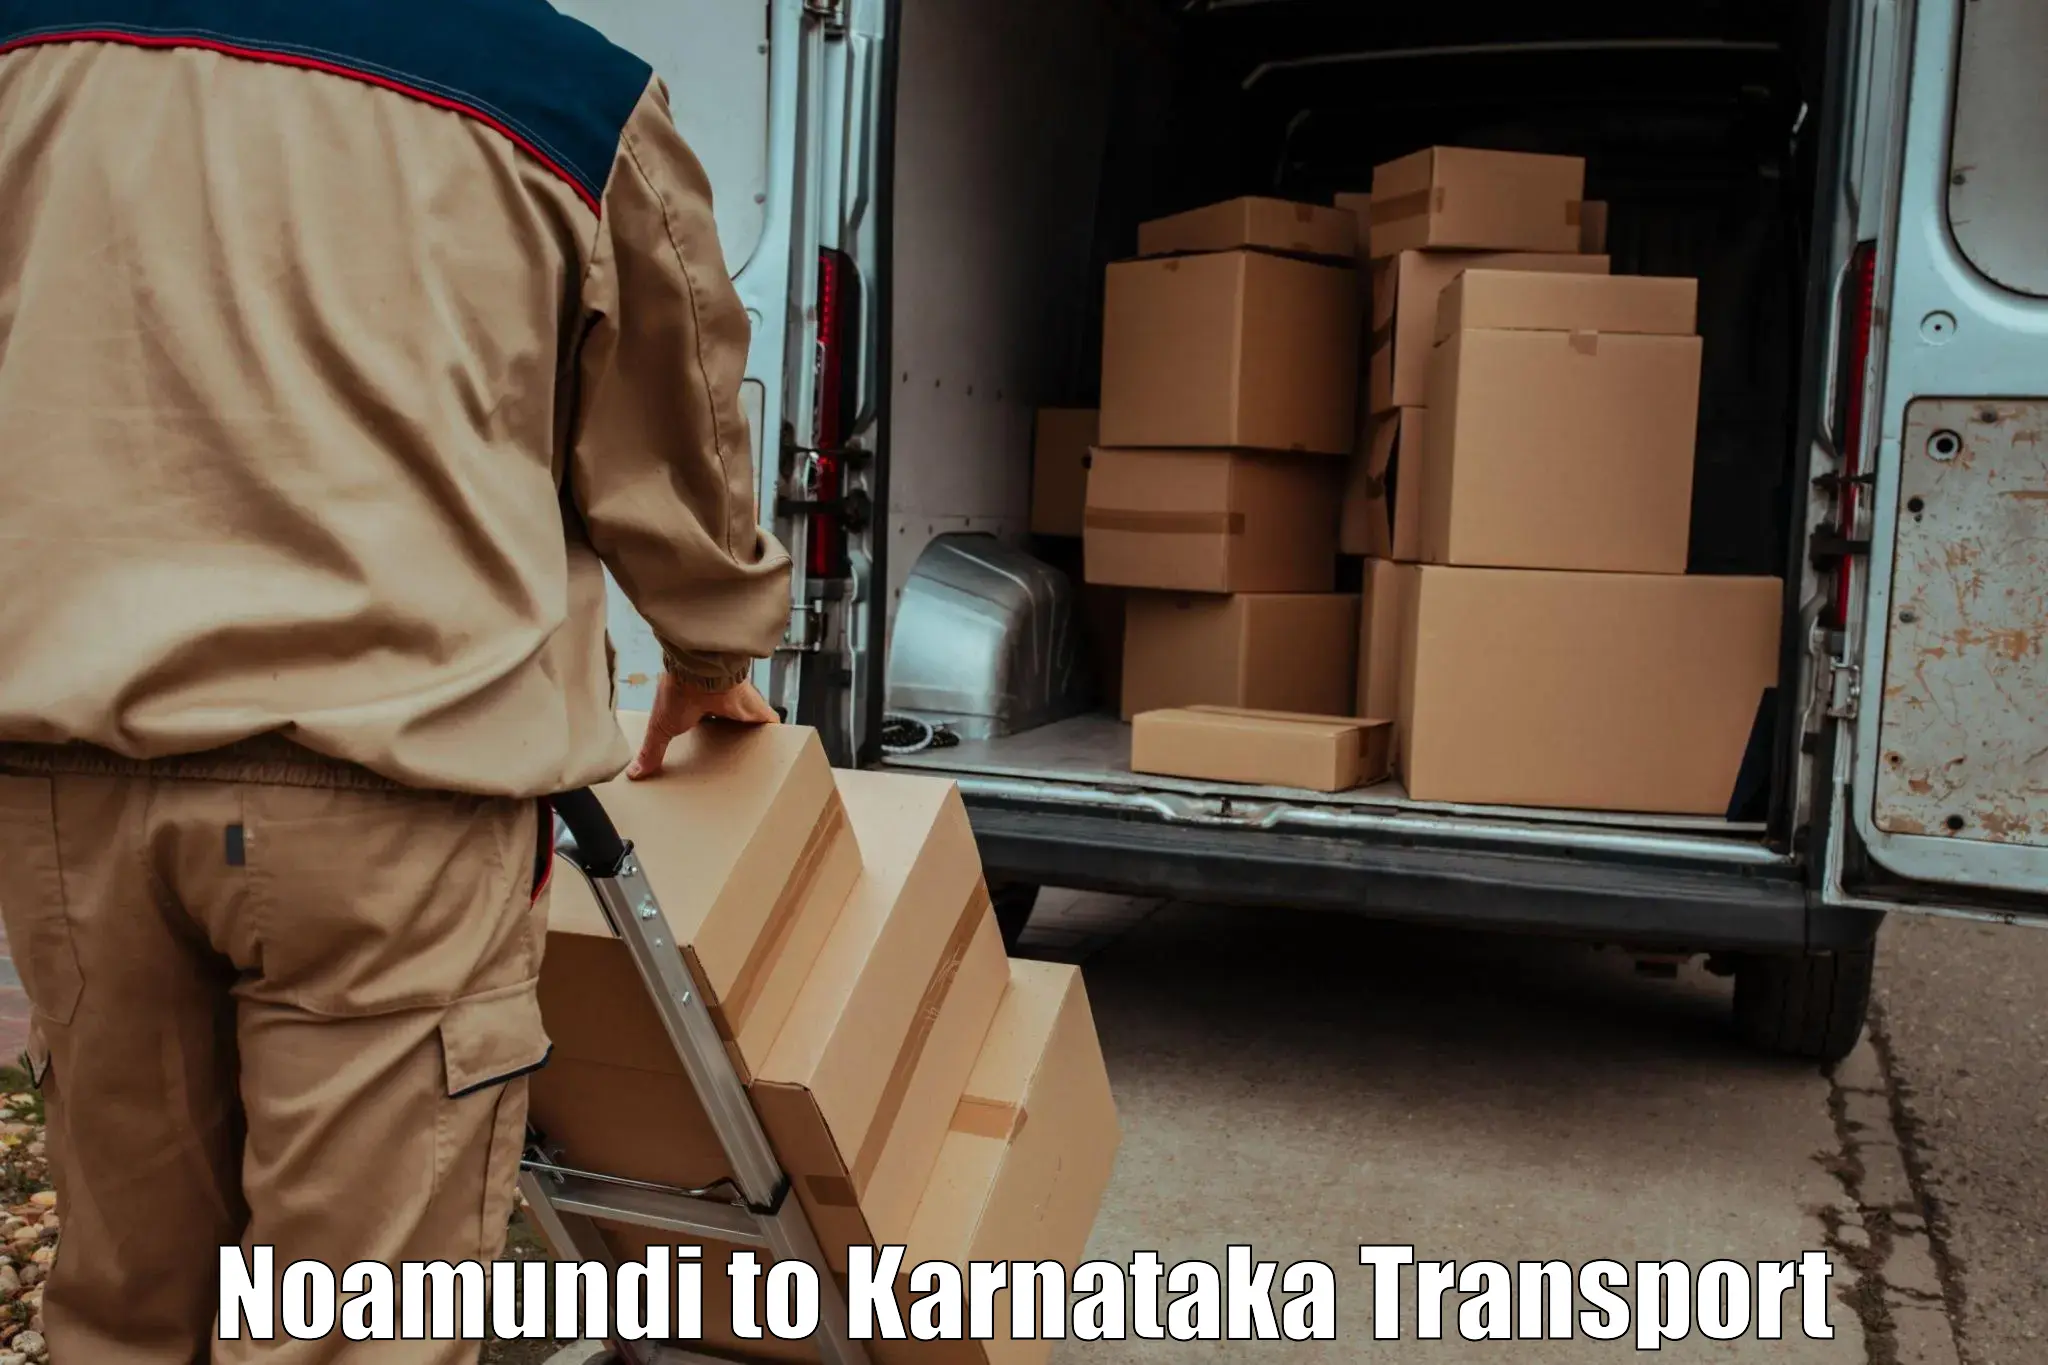 Shipping partner Noamundi to Dharmasthala